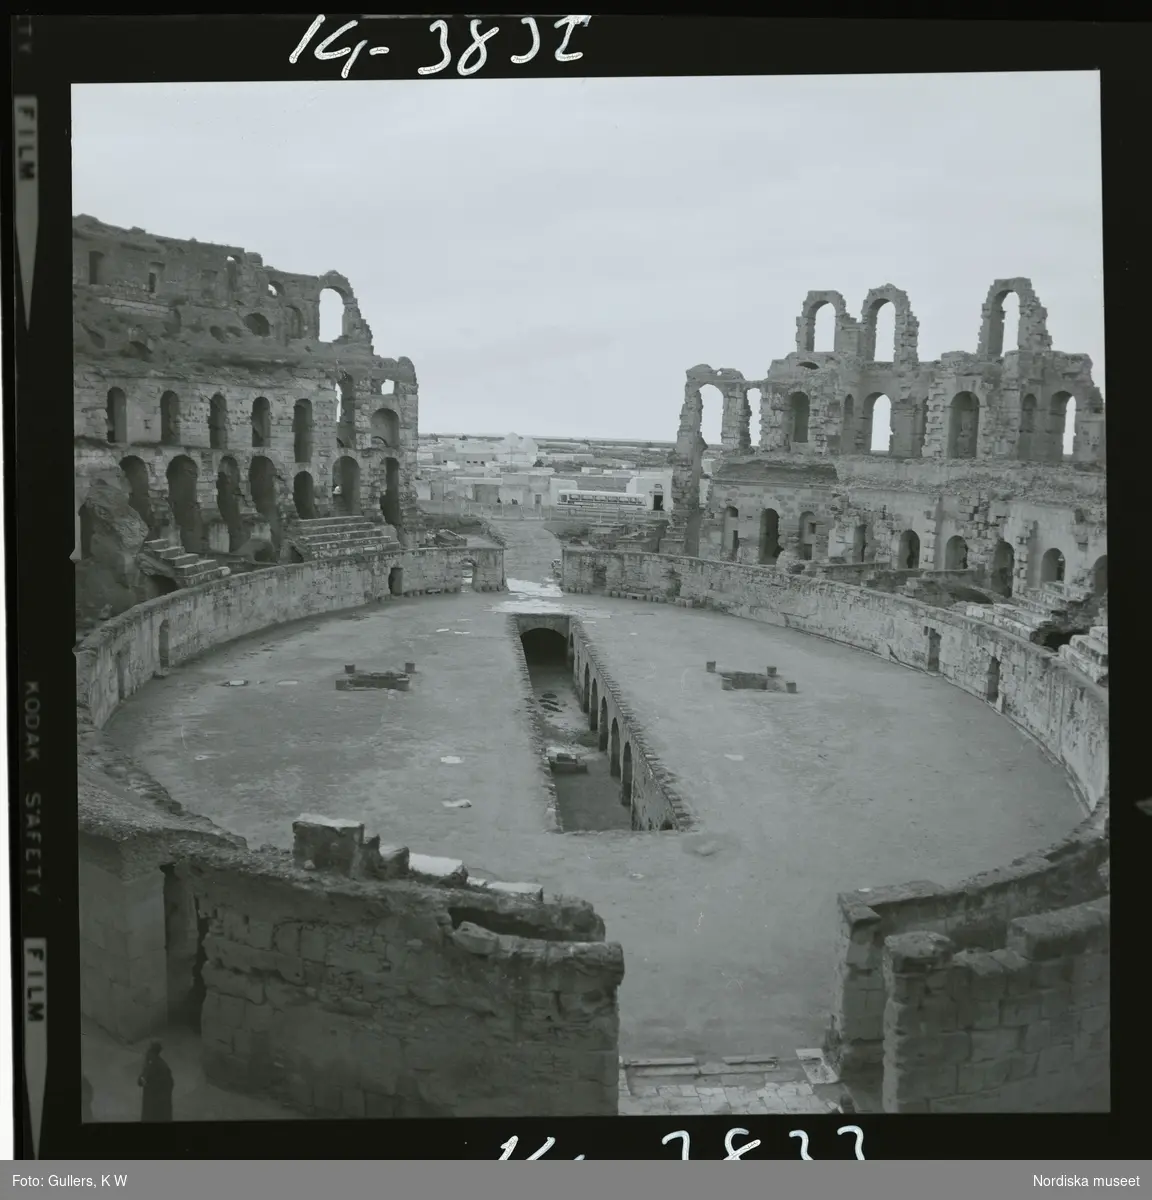 2791/1 Tunisien allmänt. Inifrån romerska amfiteatern i El Djem.